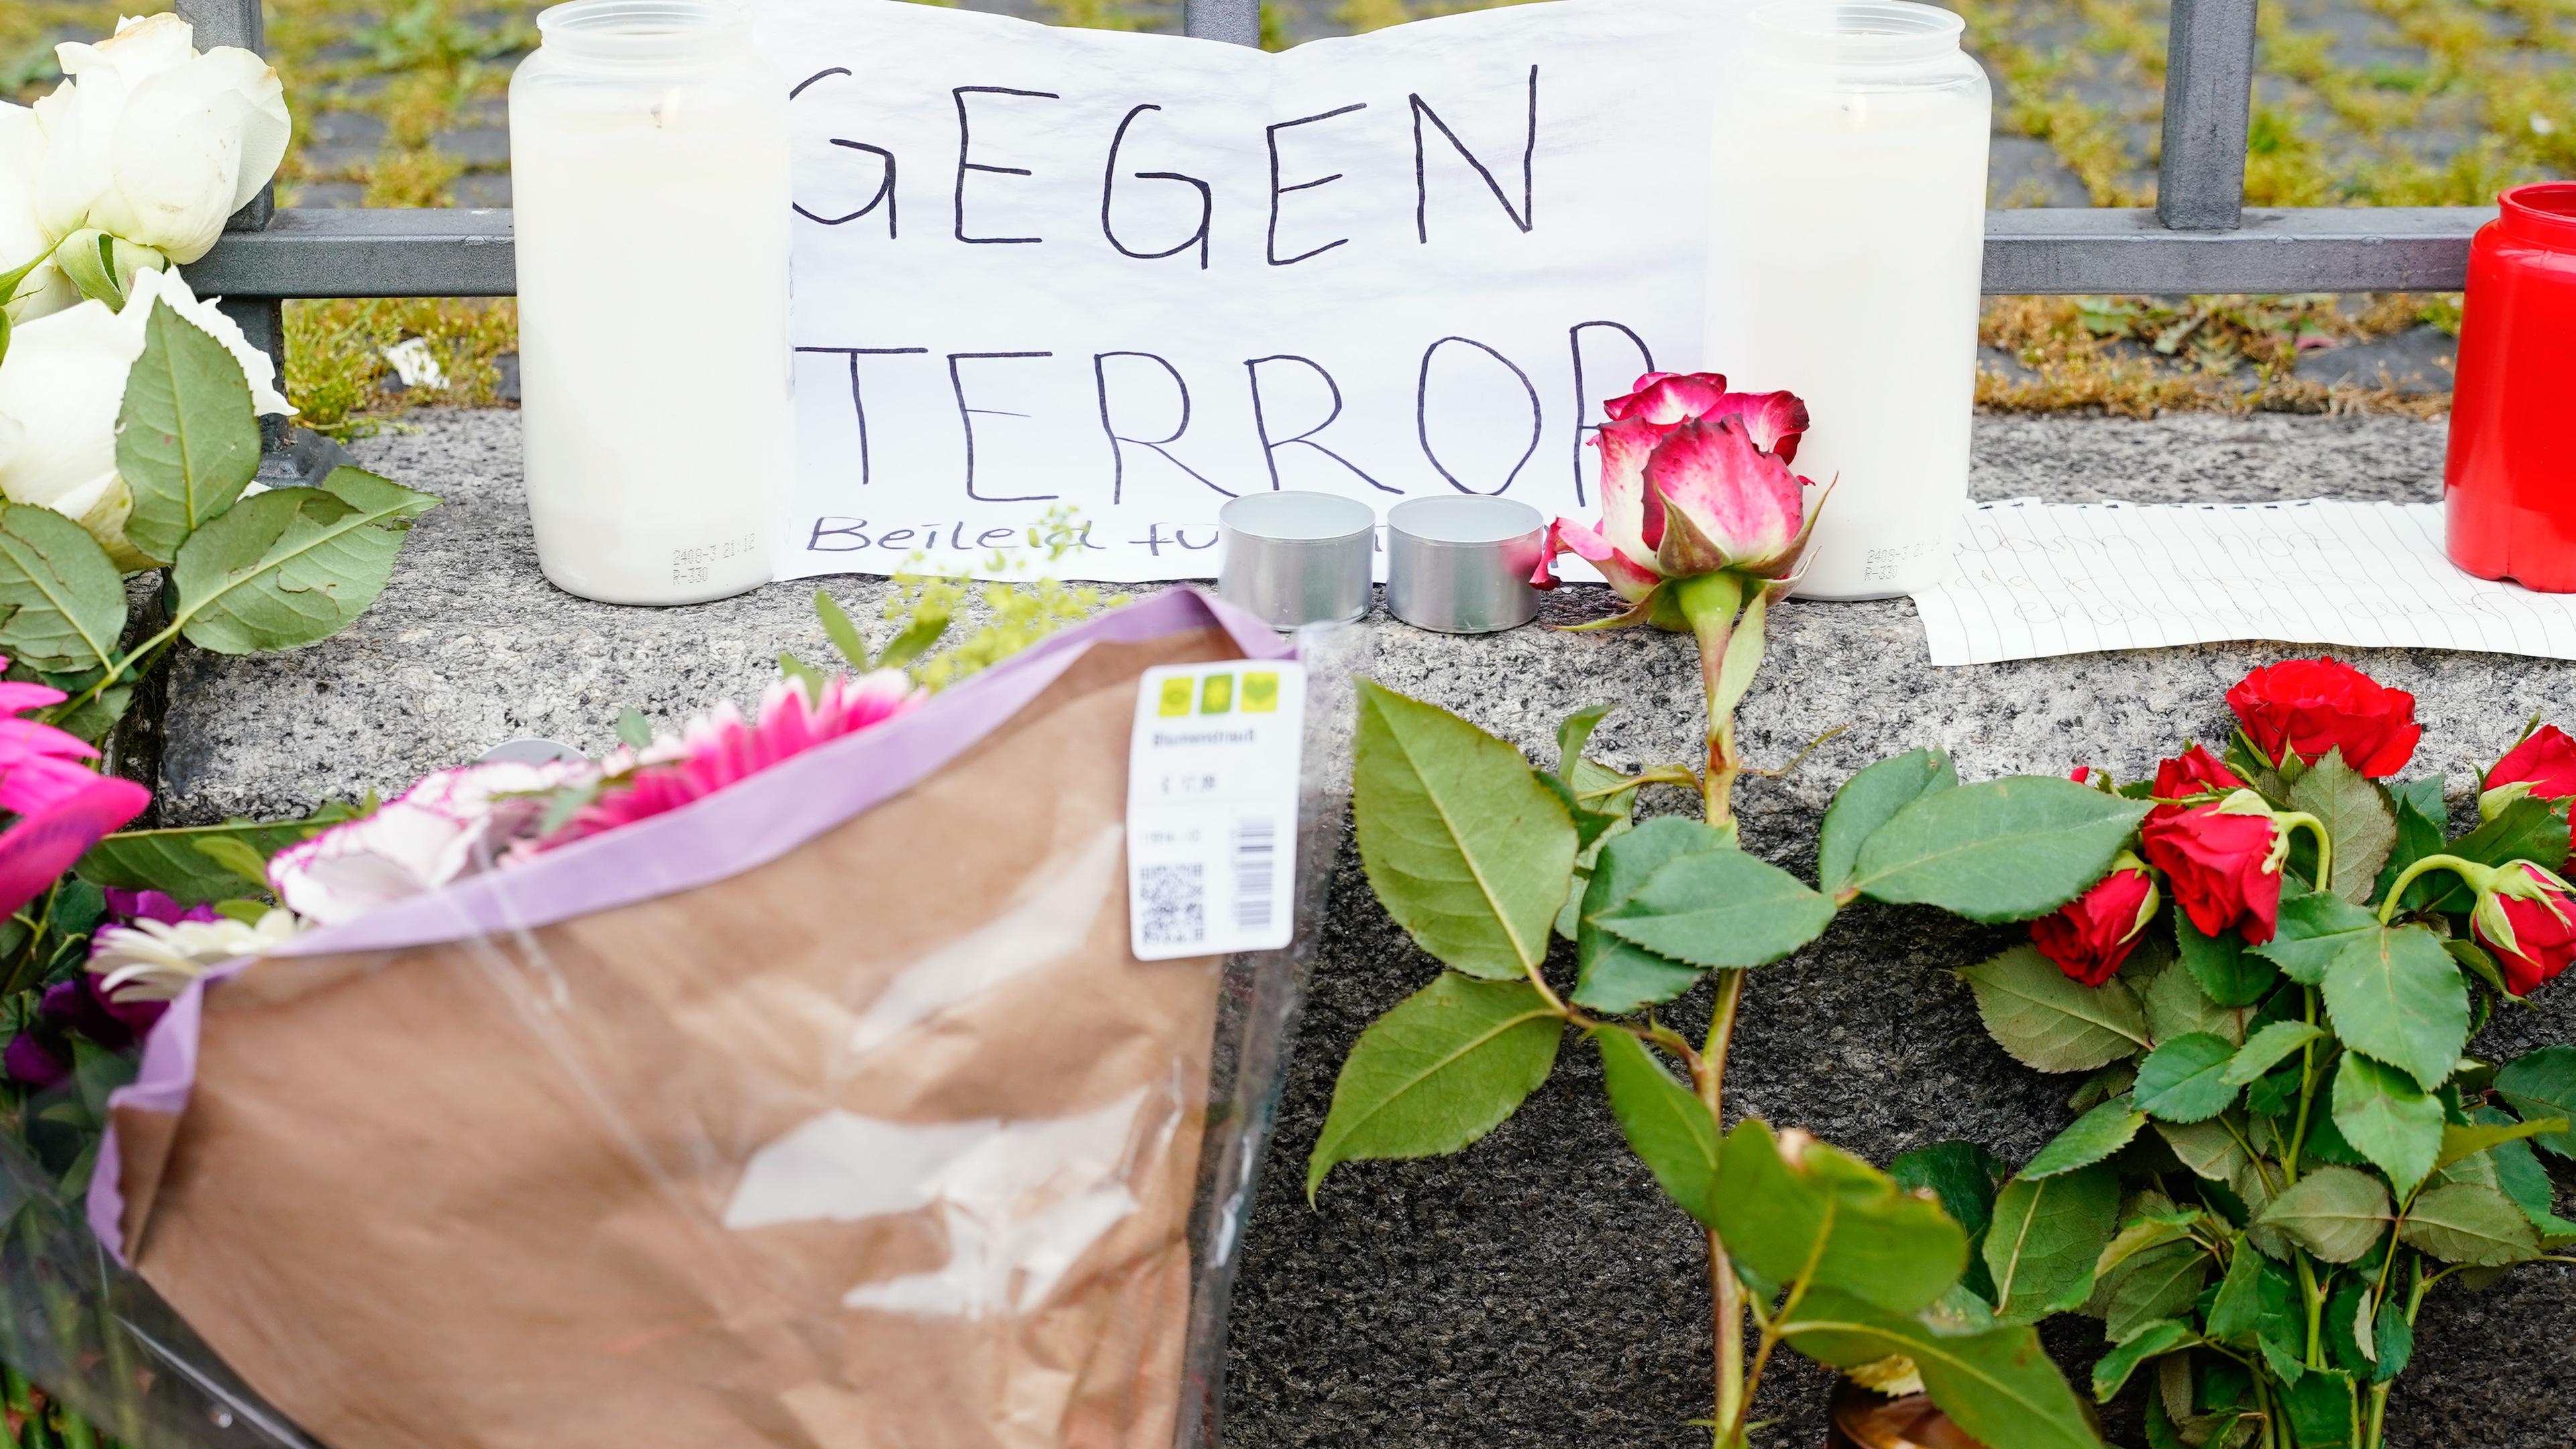 Kerzen, Blumen und ein Blatt Papier mit der Aufschrift "Gegen Terror" stehen am Tatort auf dem Marktplatz. 